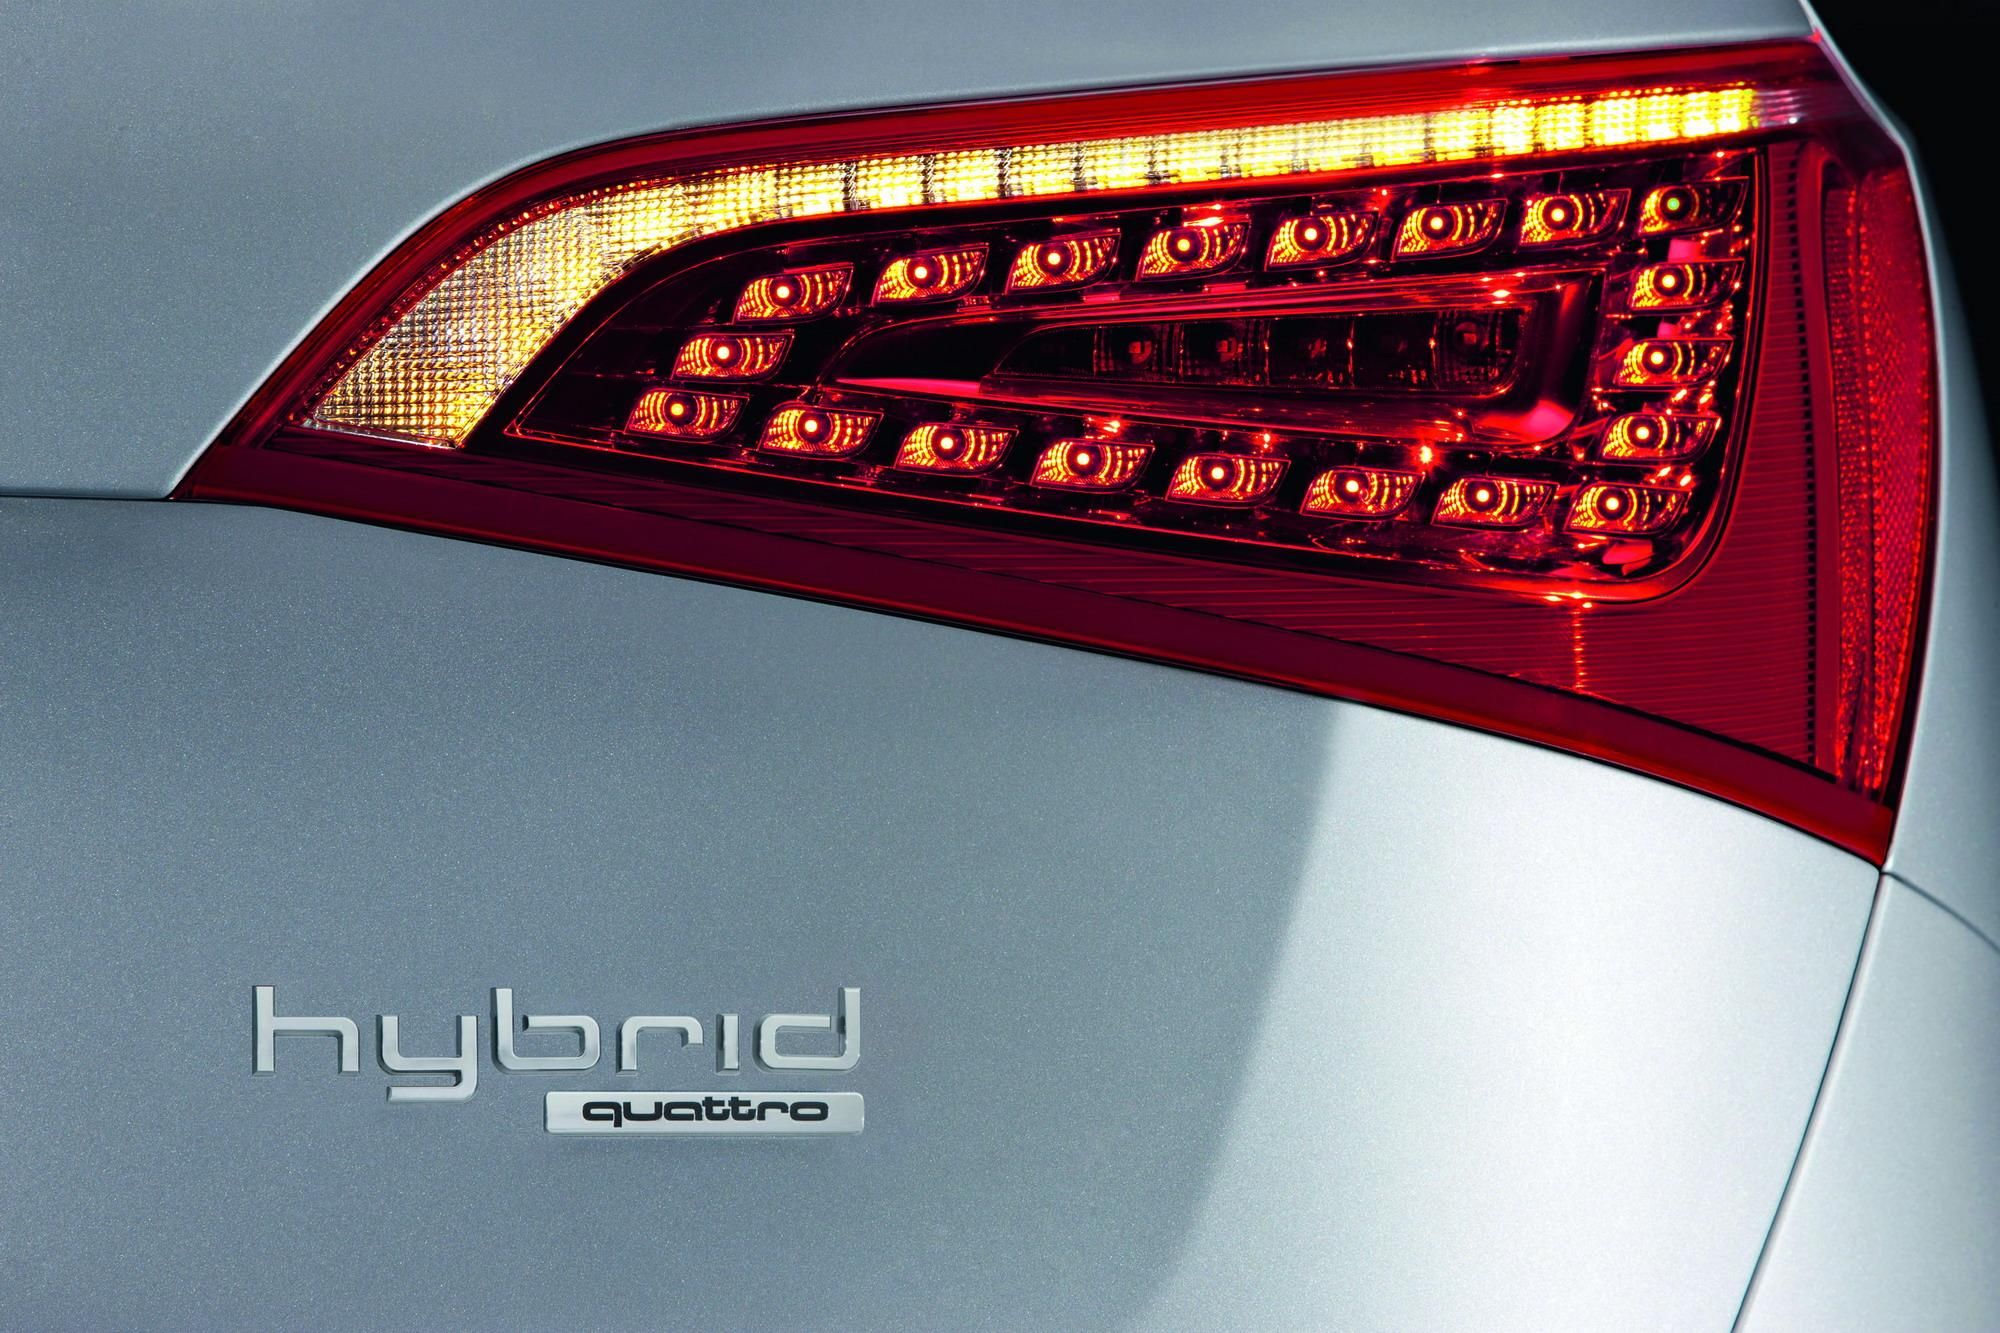 2011 Audi Q5 Hybrid Quattro